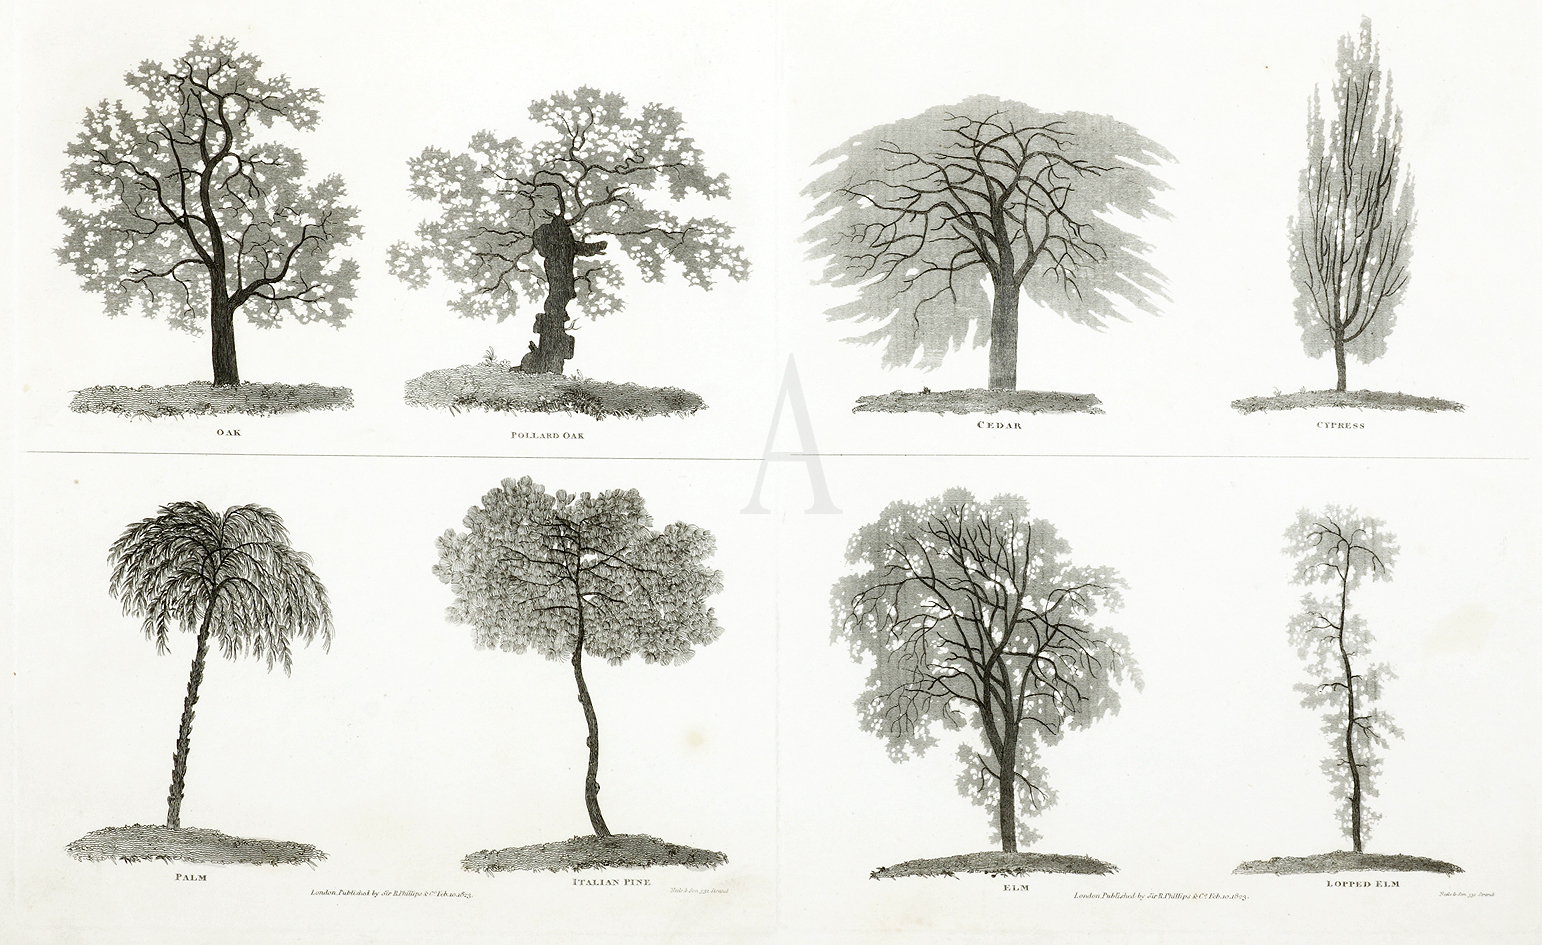 Oak, Pollard Oak, Cedar, Cypress, Palm, Italian Pine, Elm, Lopped Elm. - Antique Print from 1823